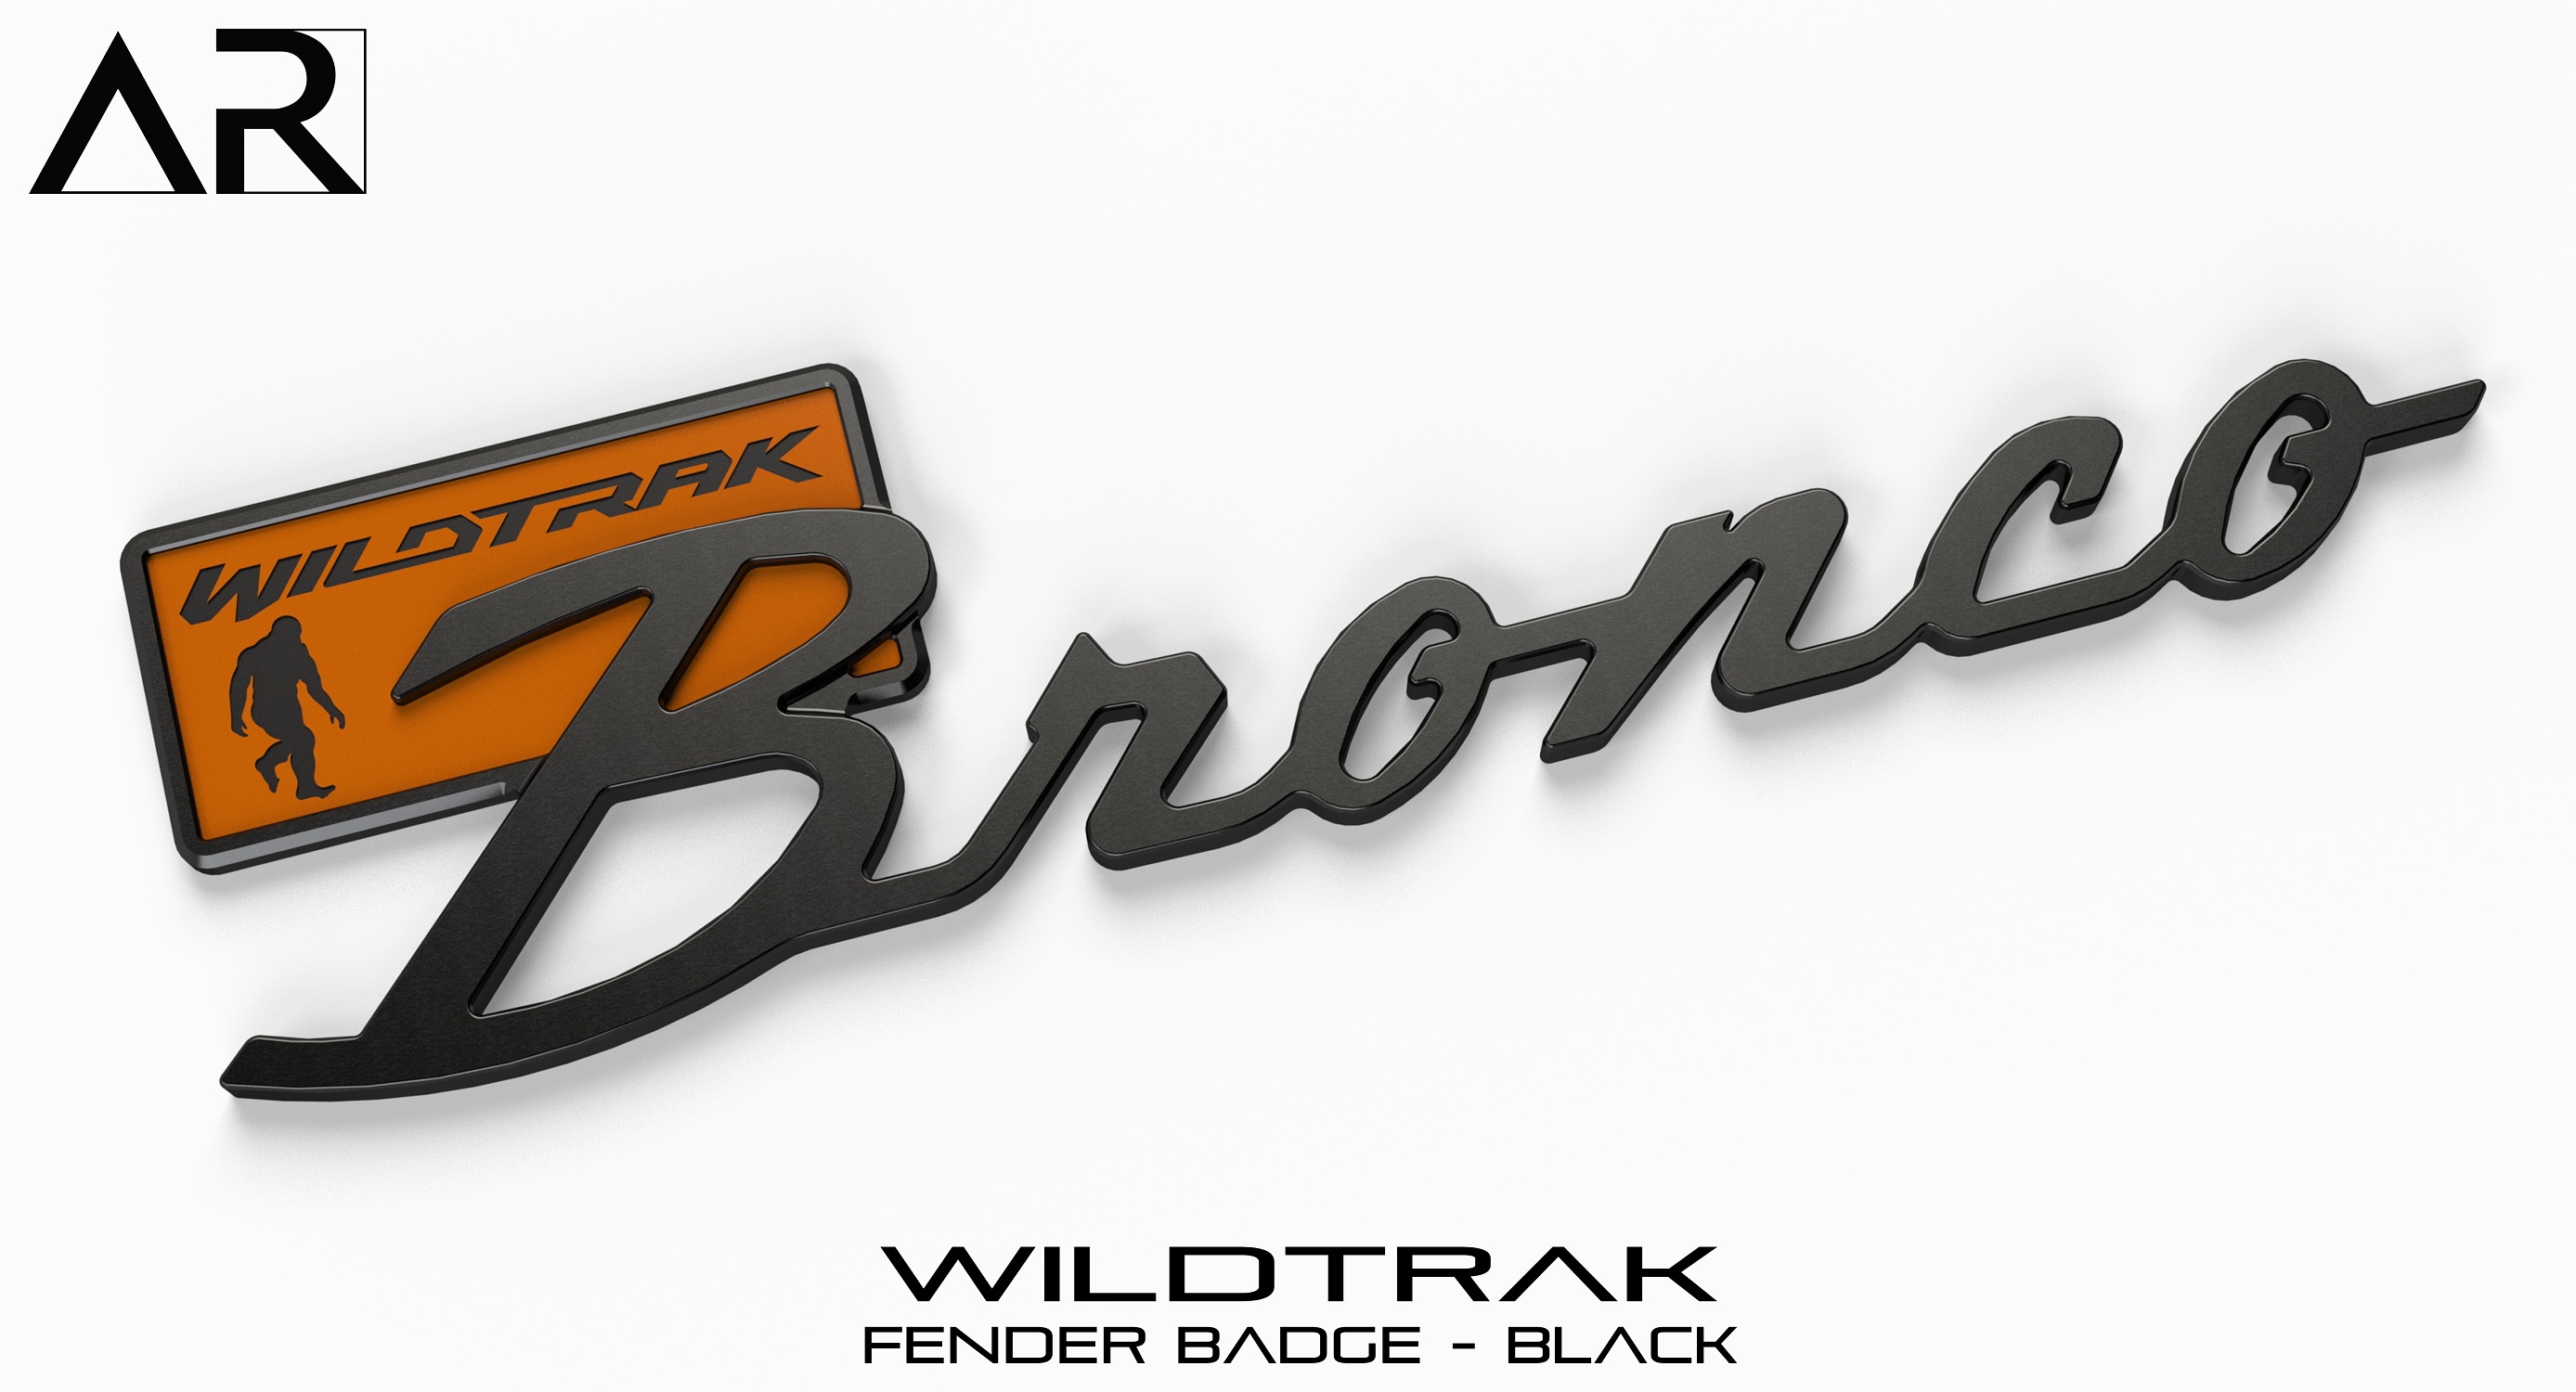 Ford Bronco AR | BRONCO CLASSIC DNA Fender Badge 7F202D99-3073-499E-A34E-CAAFF494E1DC